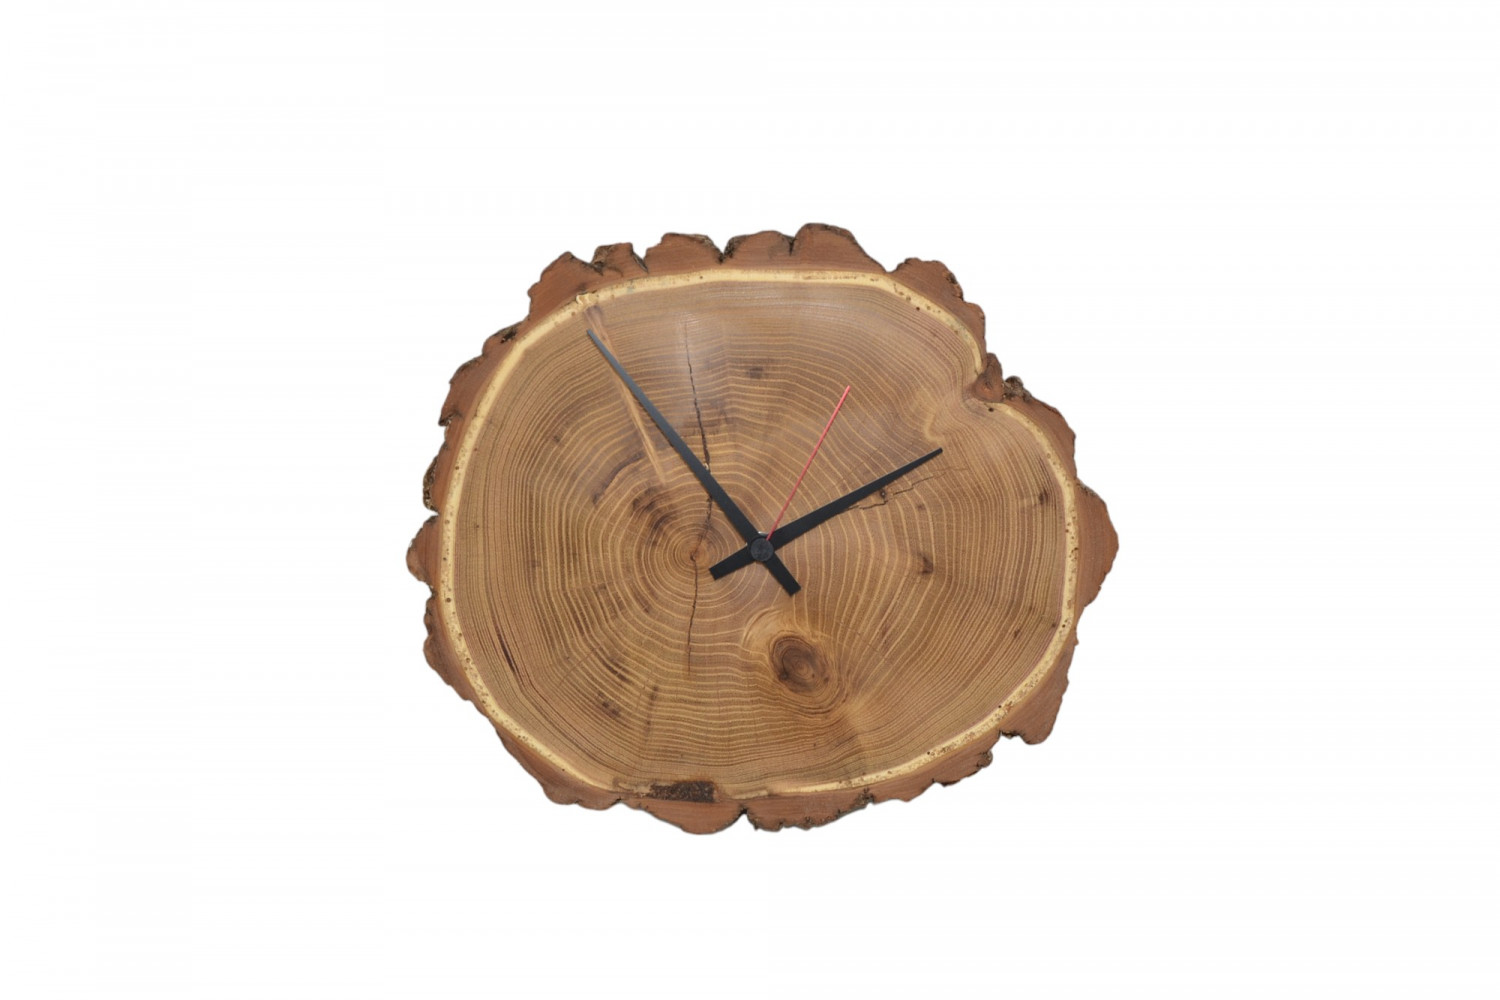 Holzuhr Holz Wanduhr Uhr 32x28 cm Robinie Baumscheibe Baumscheibenuhr Holzdekoration Holzdeko Deko Geschenk Geschenkidee Unikat Uhrwerk